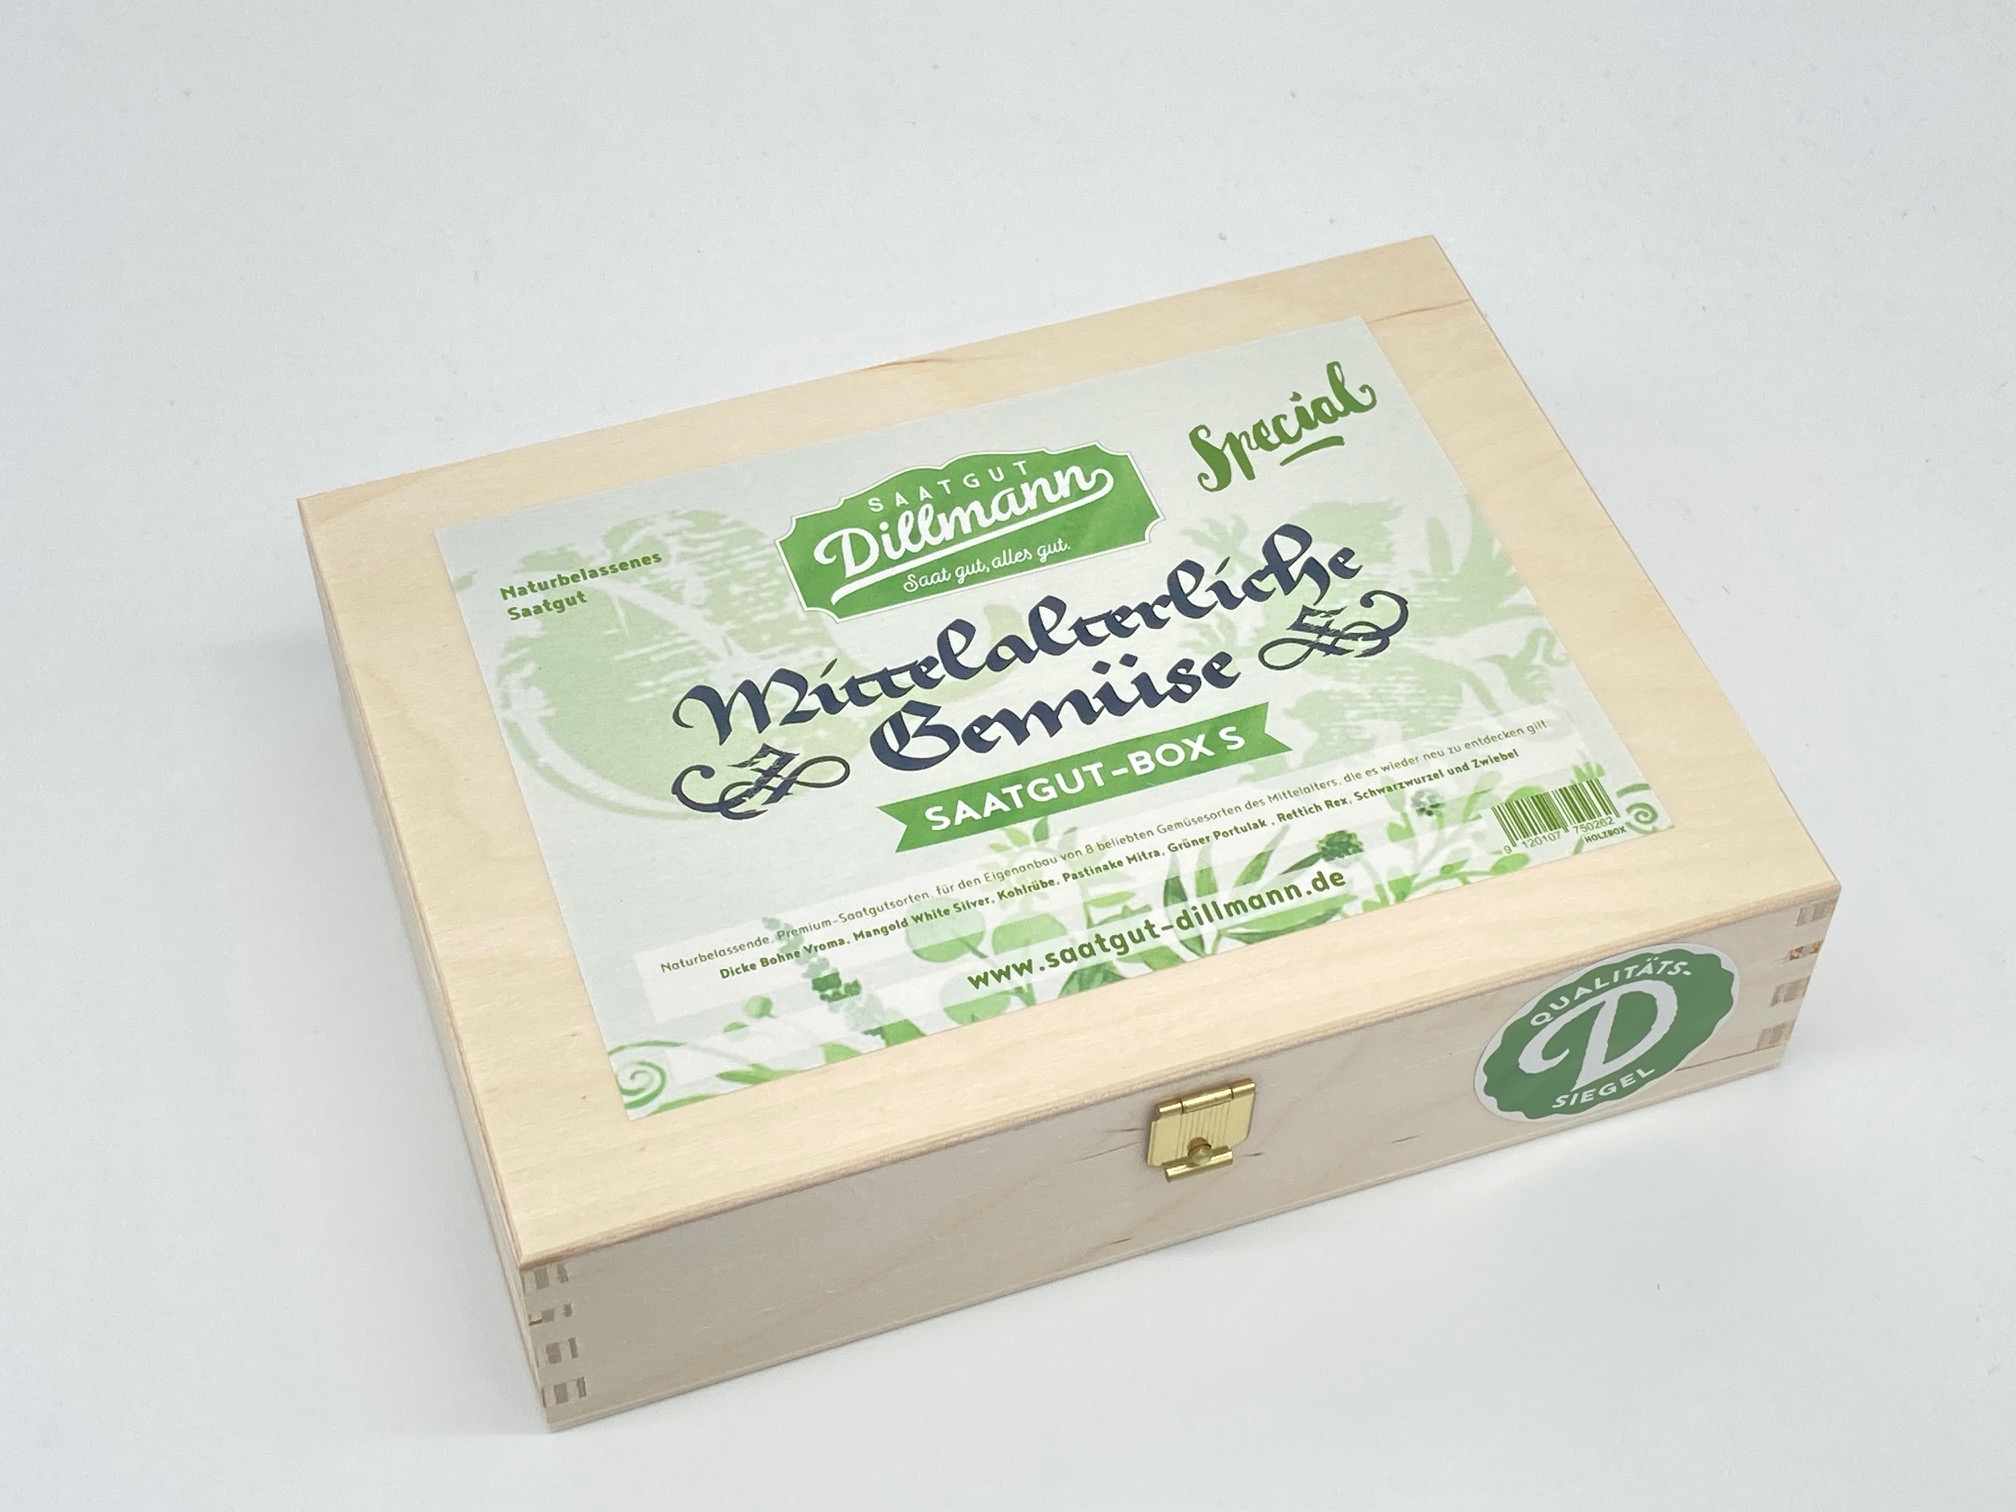 Mittelalterliche Gemüse Saatgut-Box S (Holzbox)